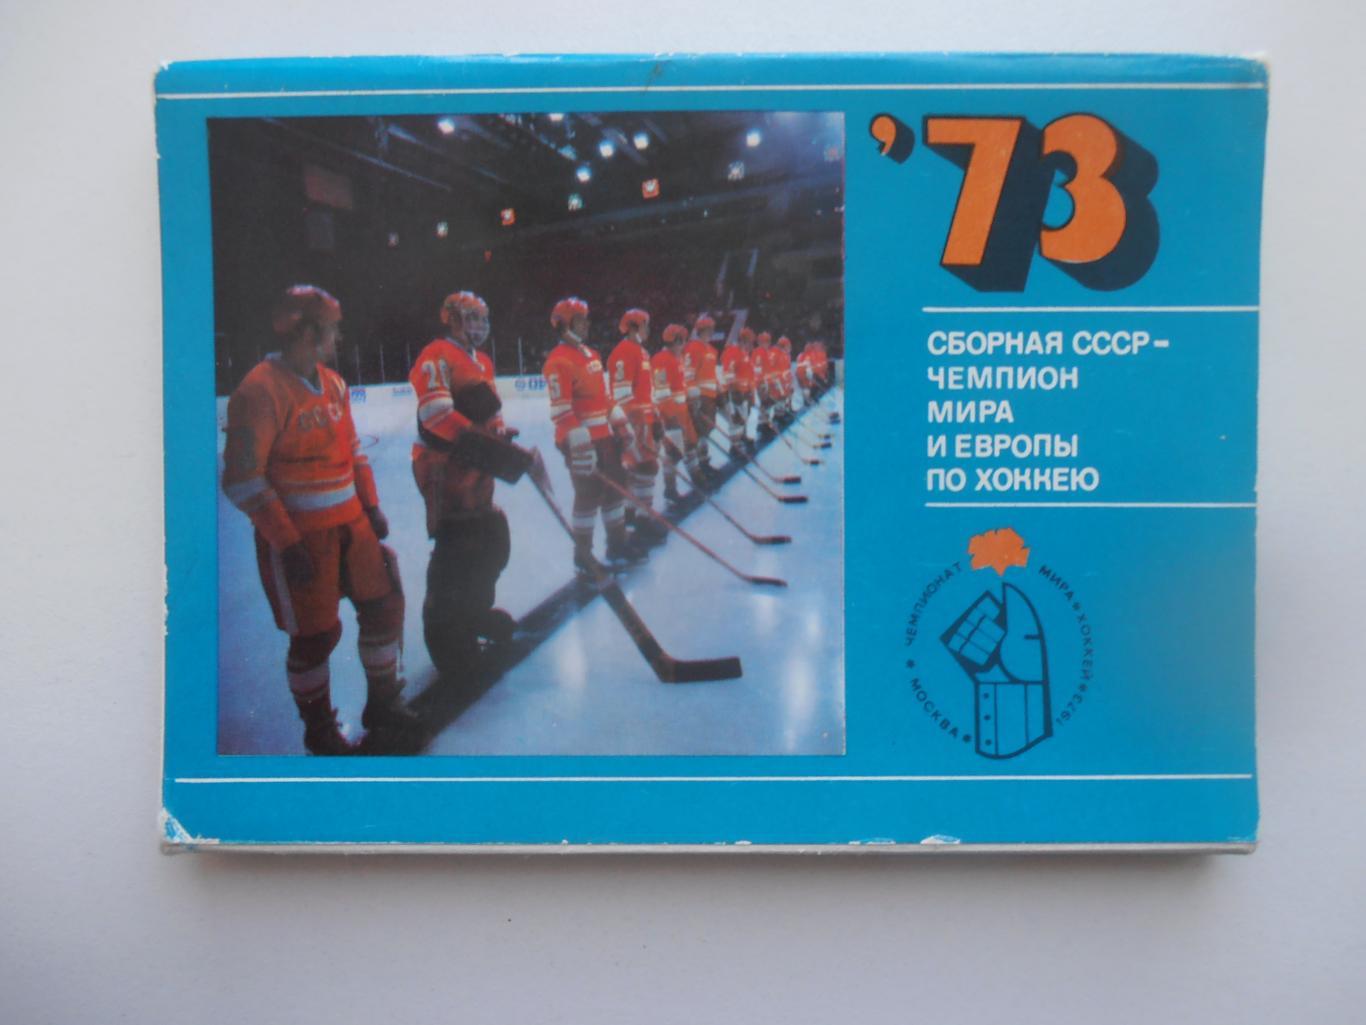 Набор сборная СССР-чемпион Мира и Европы по хоккею 1973